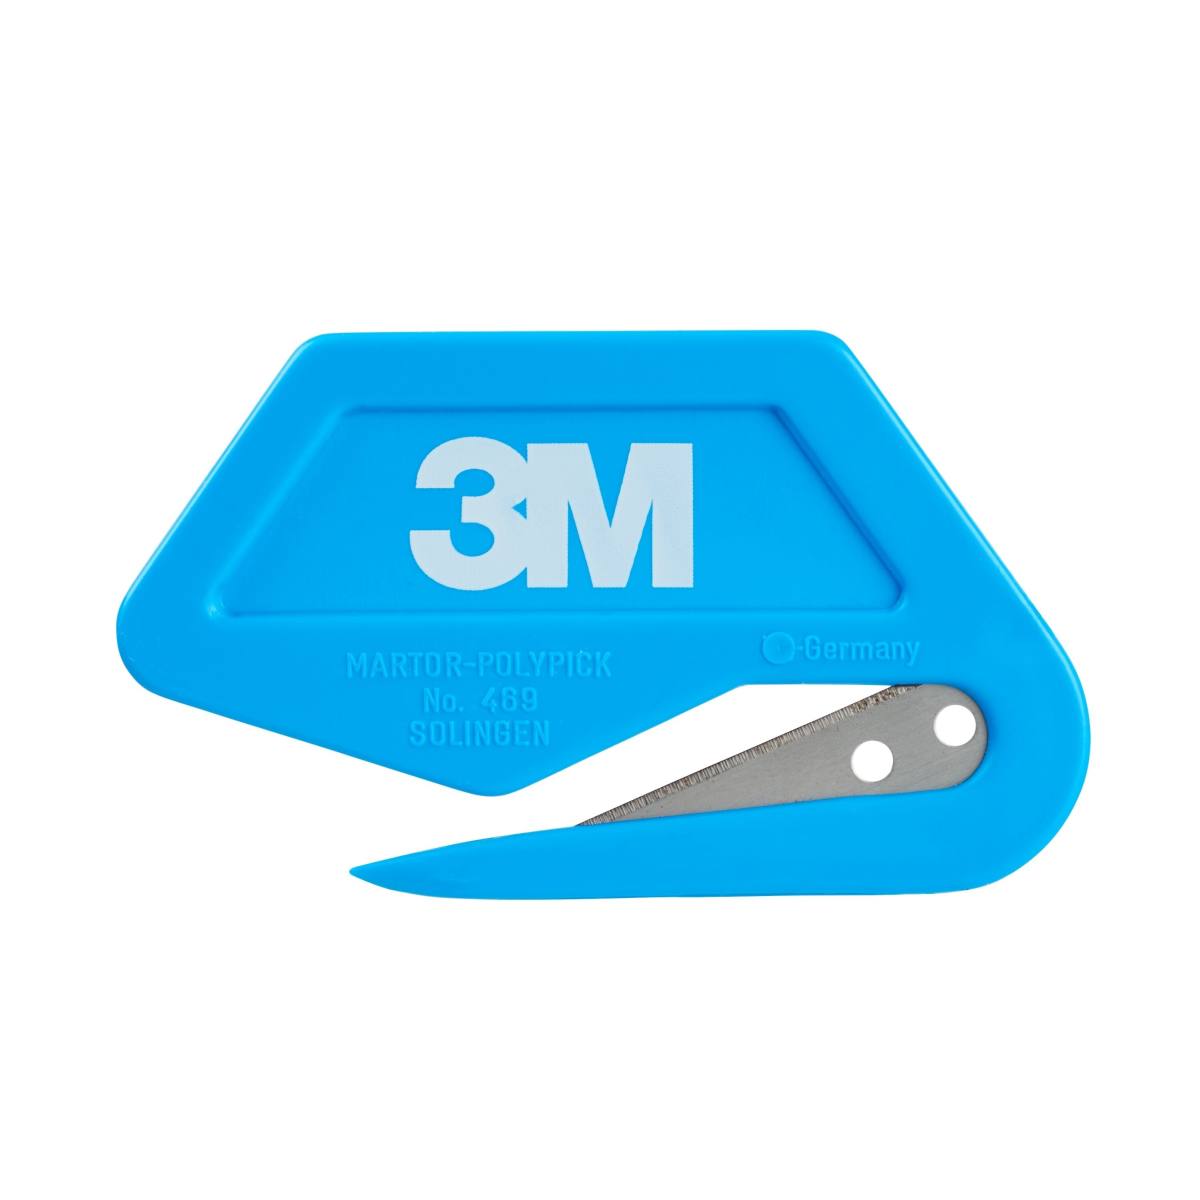 3M Terä läpinäkyvää peitekalvoa varten, sininen